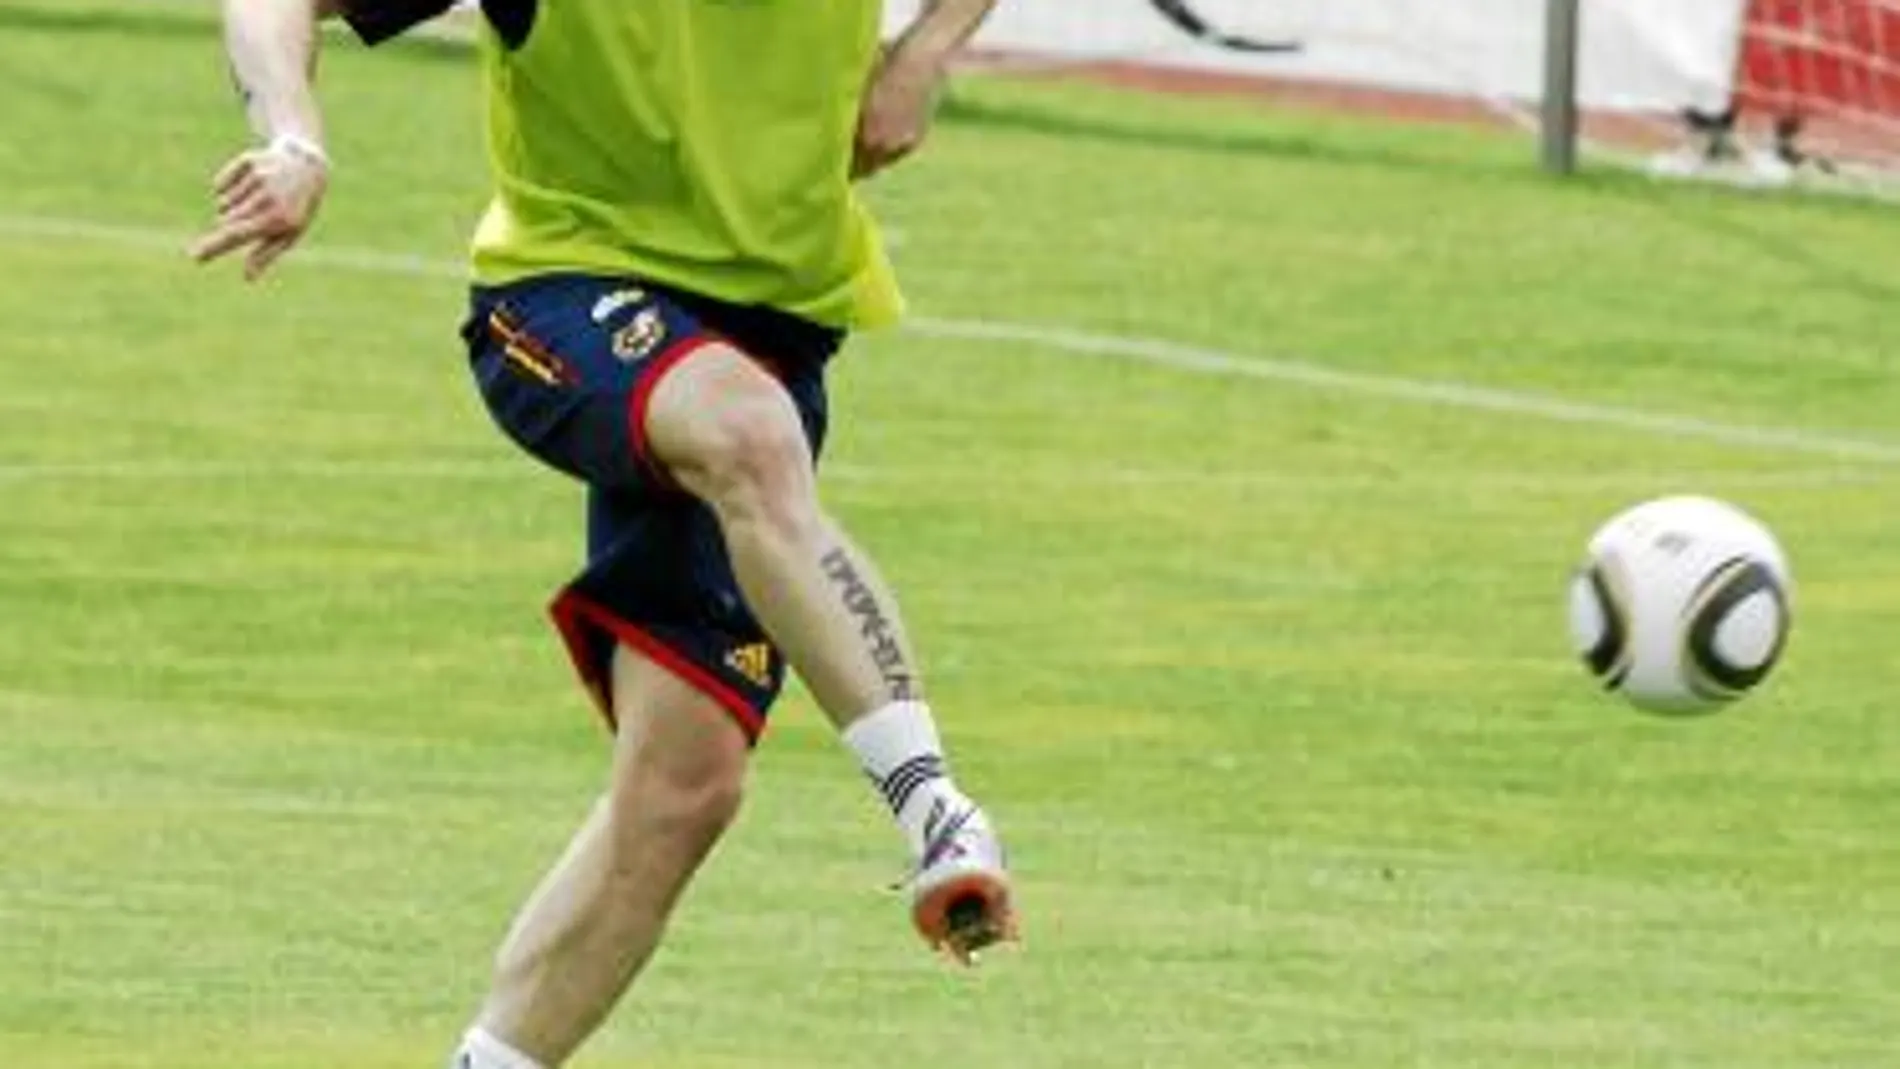 Torres remata a portería ayer en la Ciudad Deportiva de Las Rozas